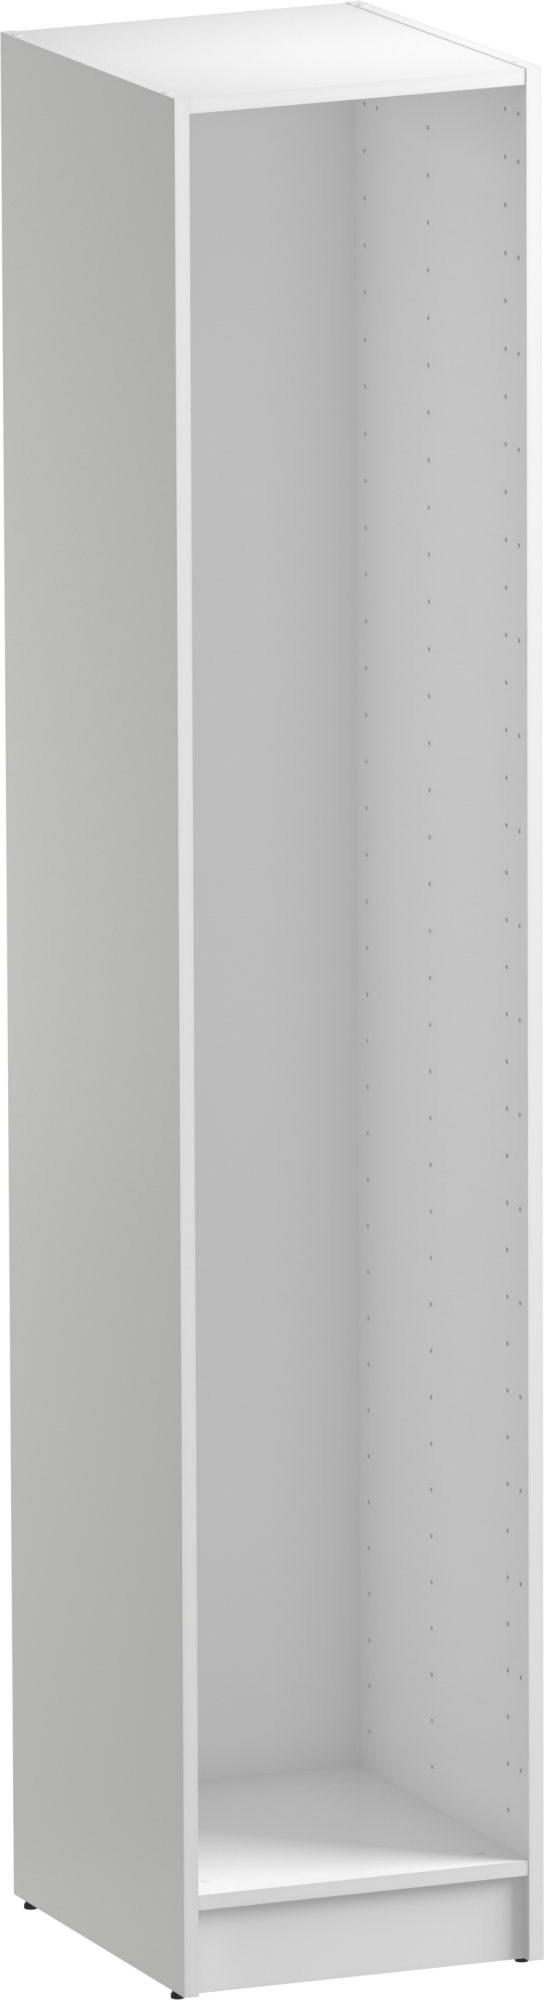 Módulo de armario spaceo home blanco 40x200x45 cm